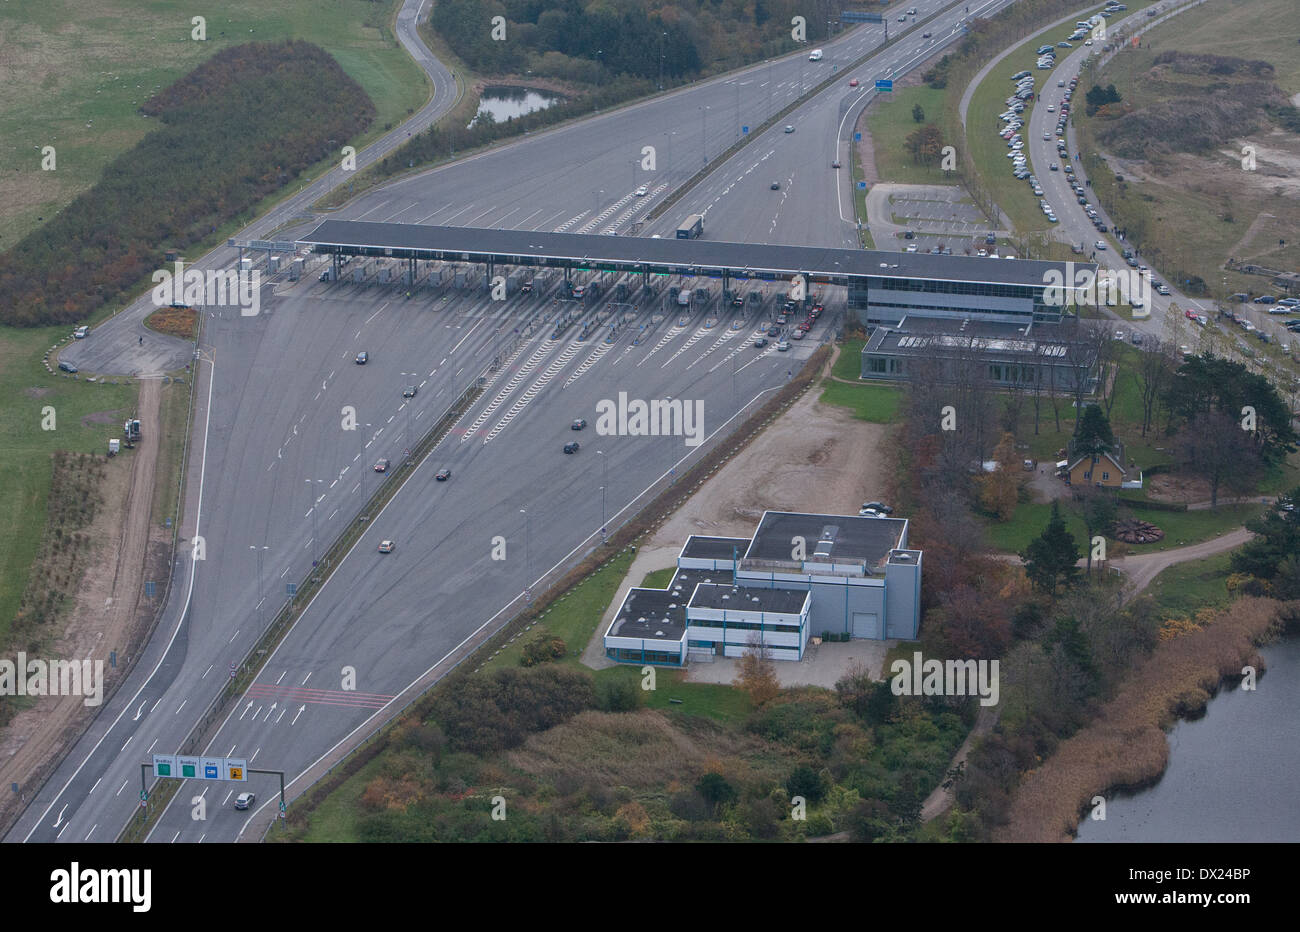 Luftaufnahme von der Verkehrsverbindung Brücke Mautstelle Korsor, Dänemark. Stockfoto